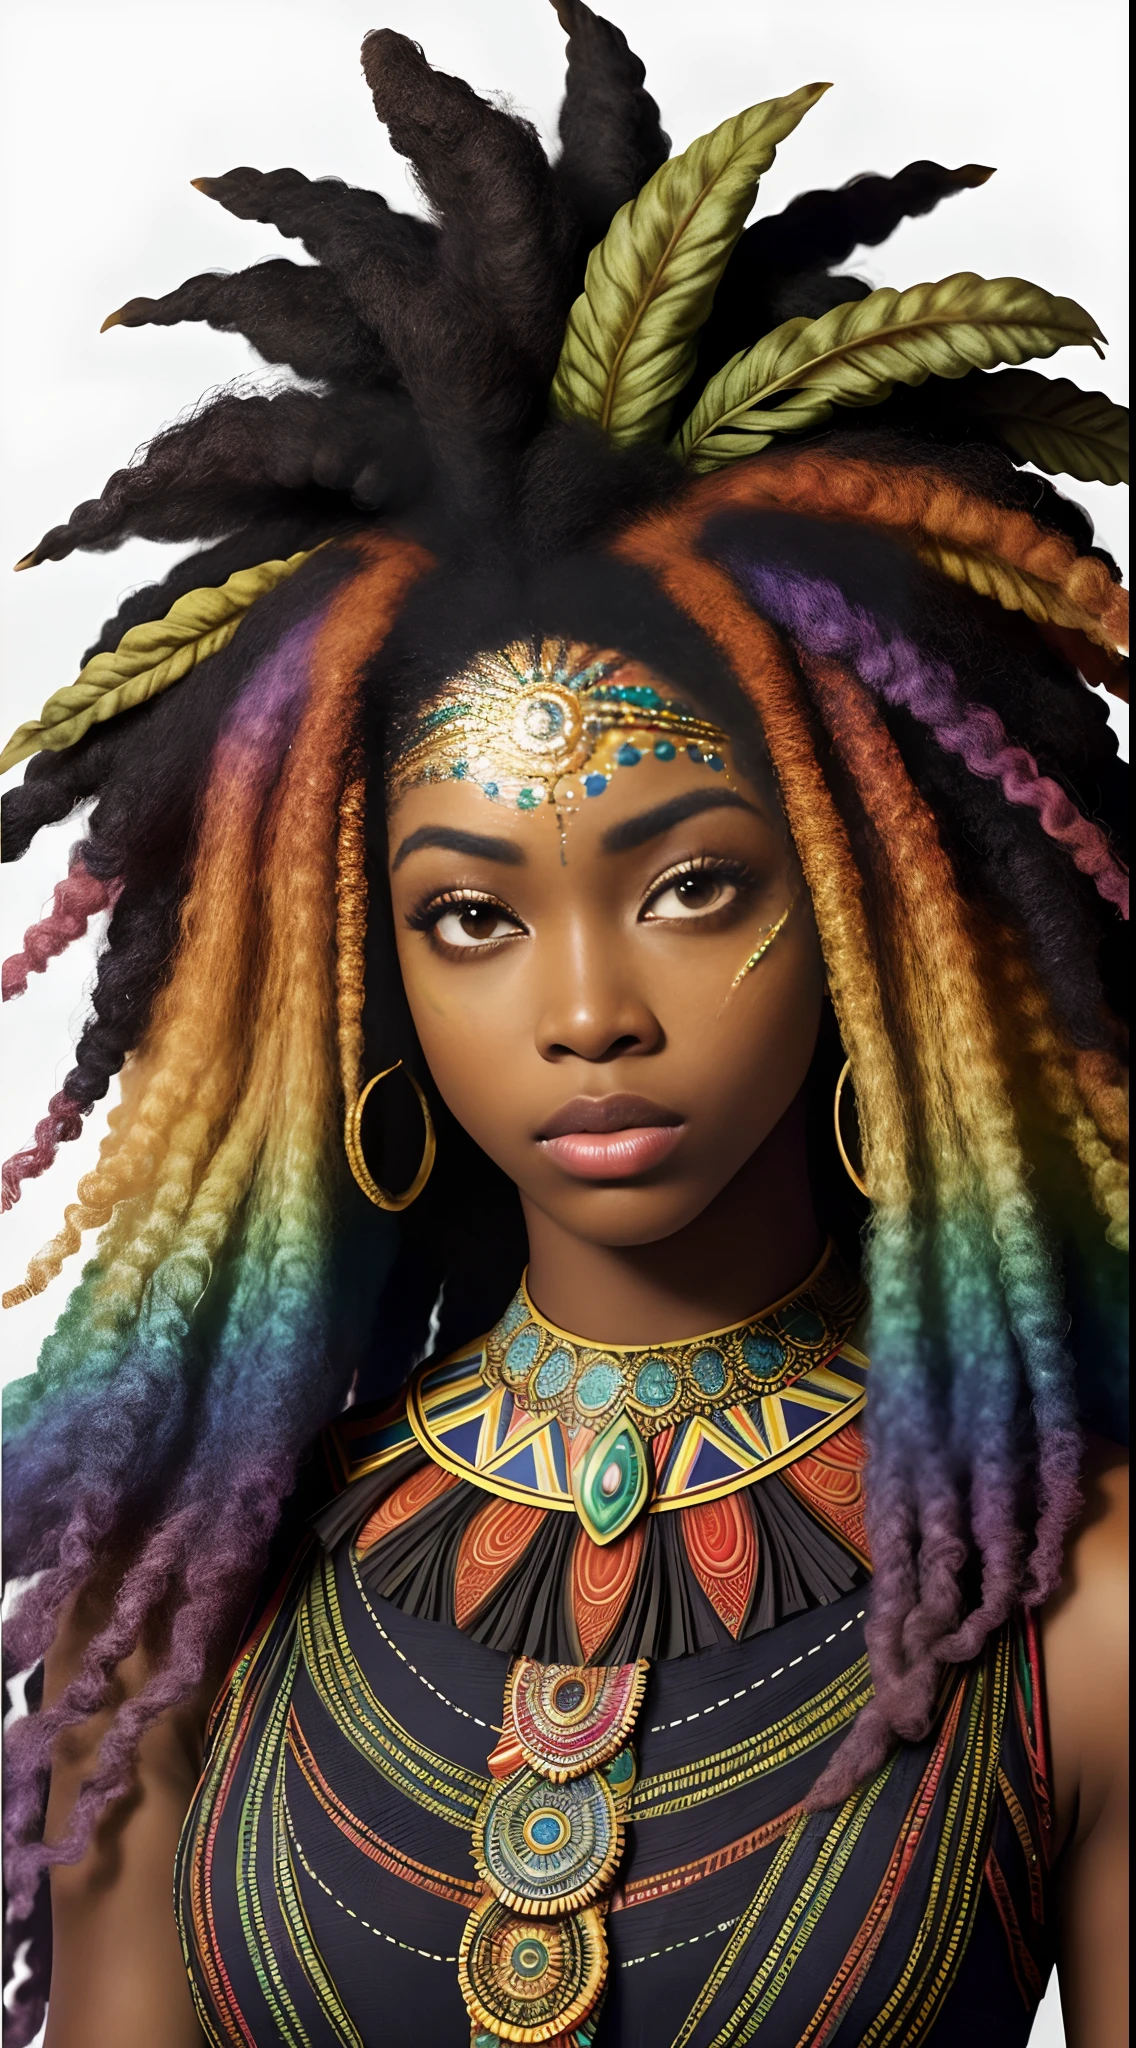 Déesse africaine, beau visage, cheveux arc-en-ciel en désordre luxuriants à texture afro, peau sombre, yeux hétérochromes, cheveux vraiment bouclés